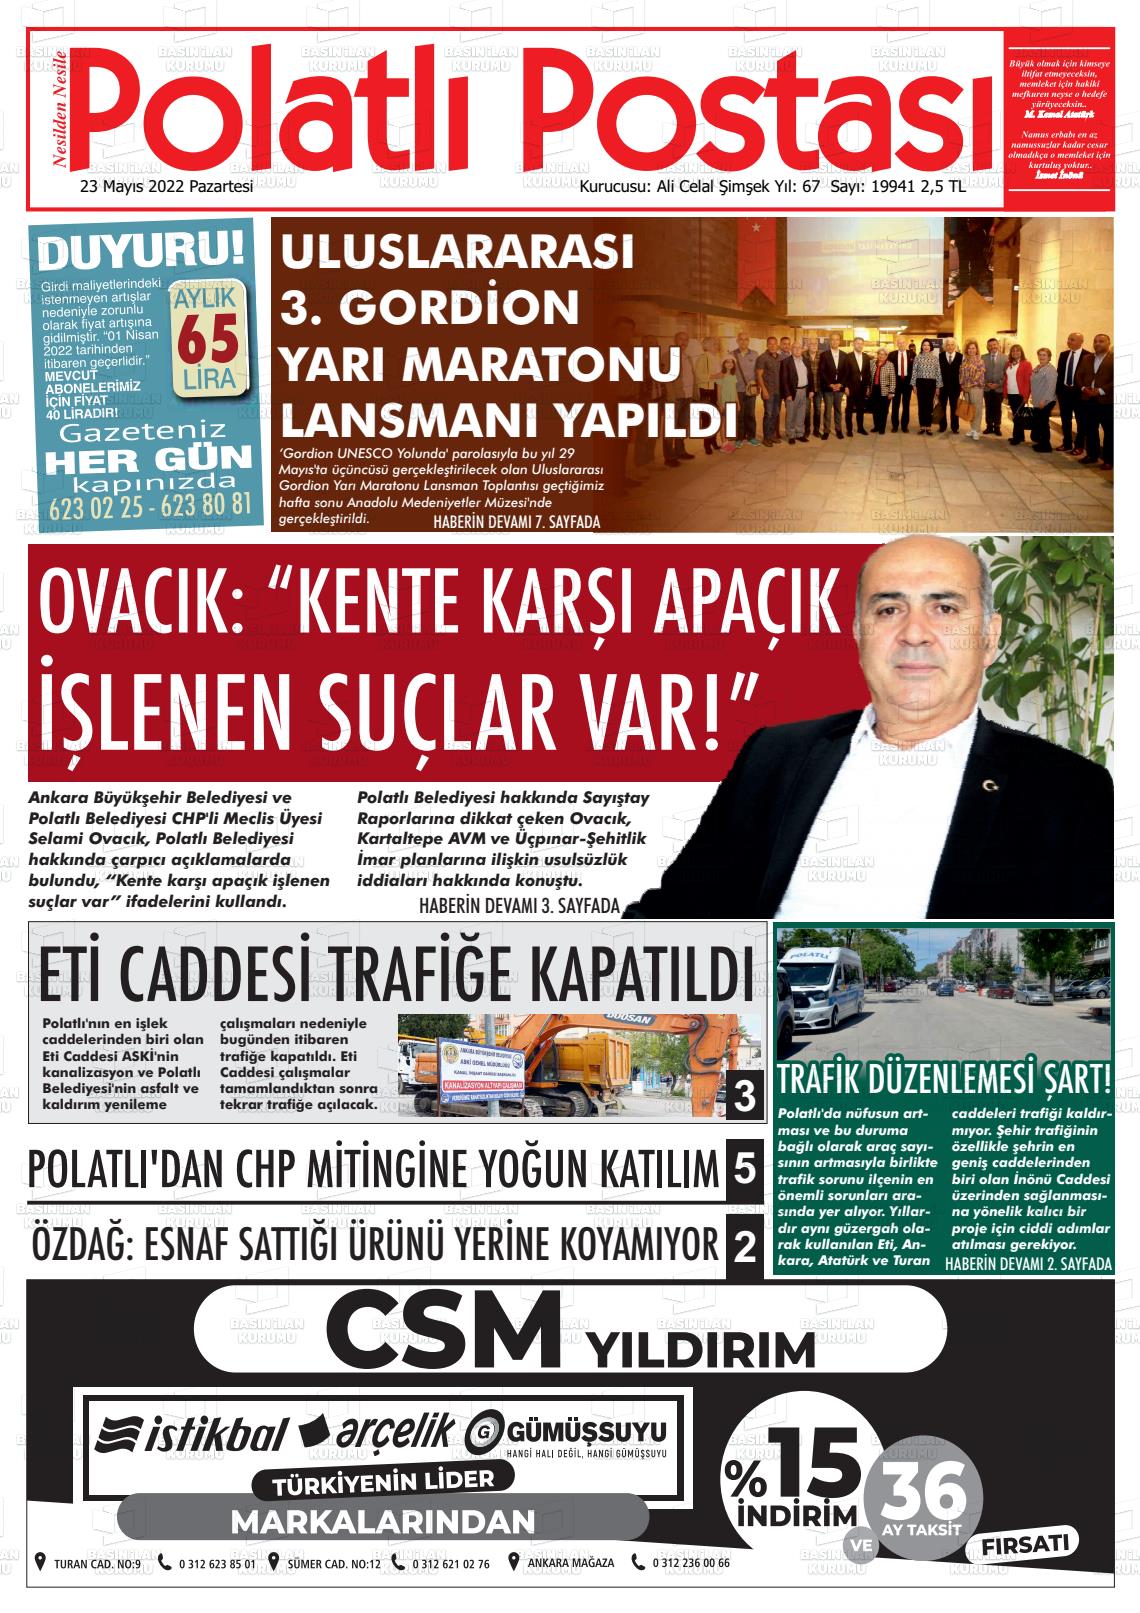 23 Mayıs 2022 Polatlı Postası Gazete Manşeti